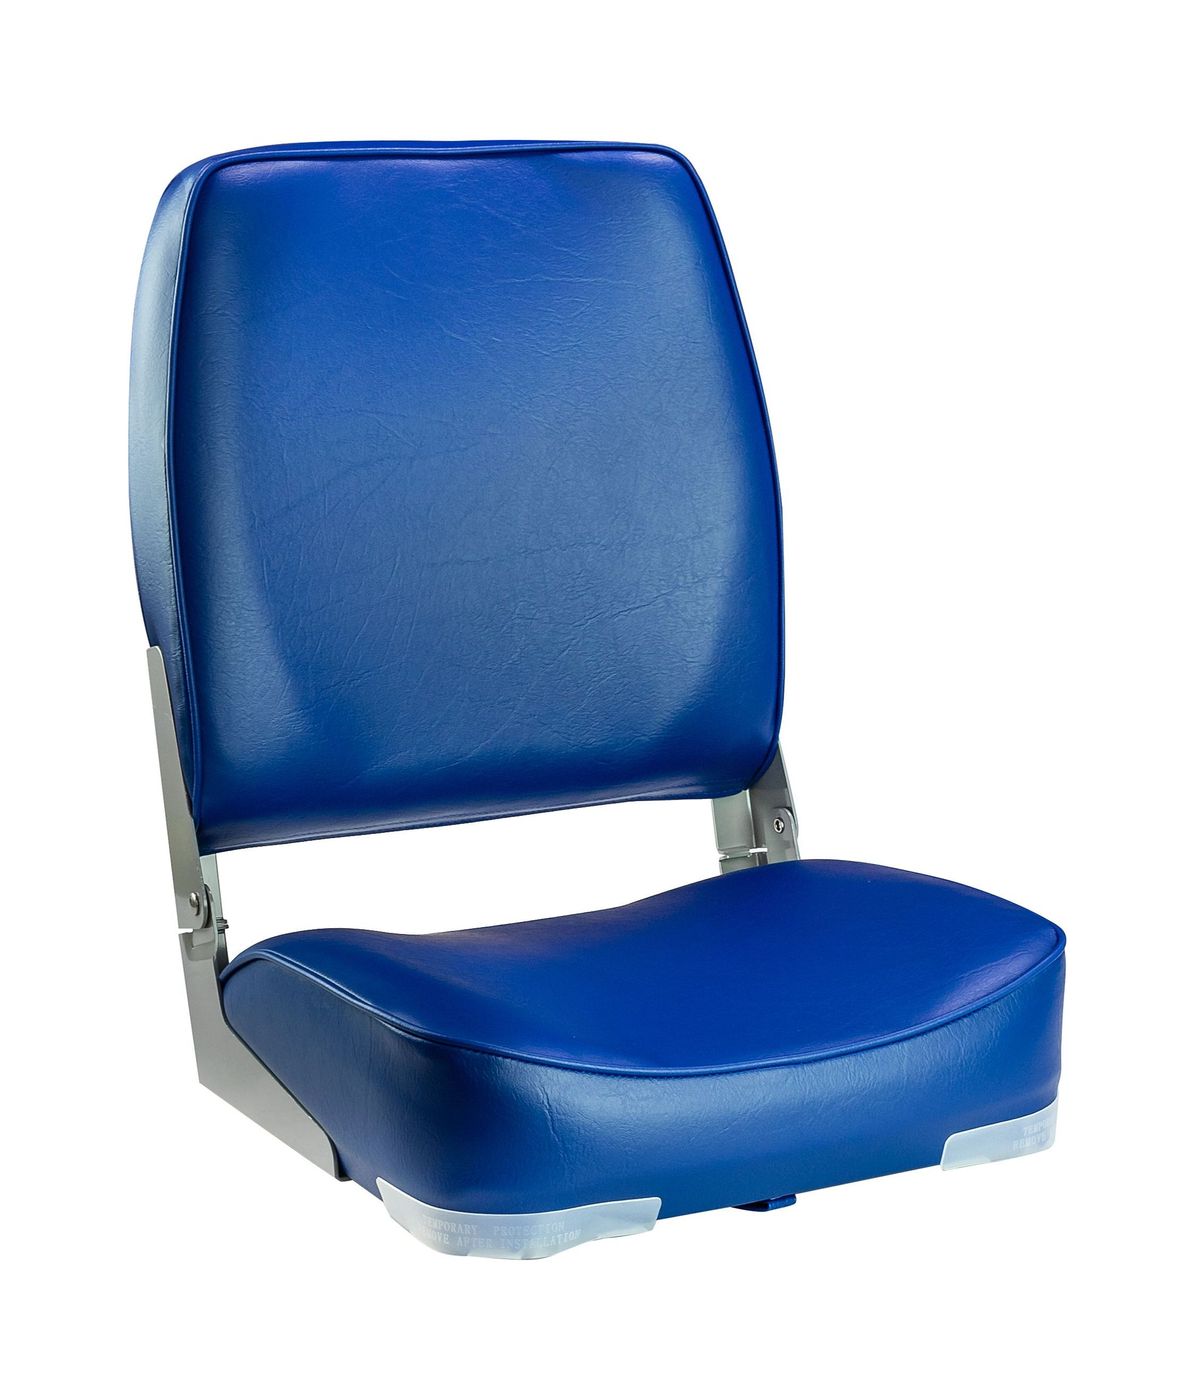 Кресло мягкое складное, высокая спинка, обивка винил, цвет синий, Marine Rocket 75127B-MR сиденье мягкое pro casting обивка синий винил 75104b